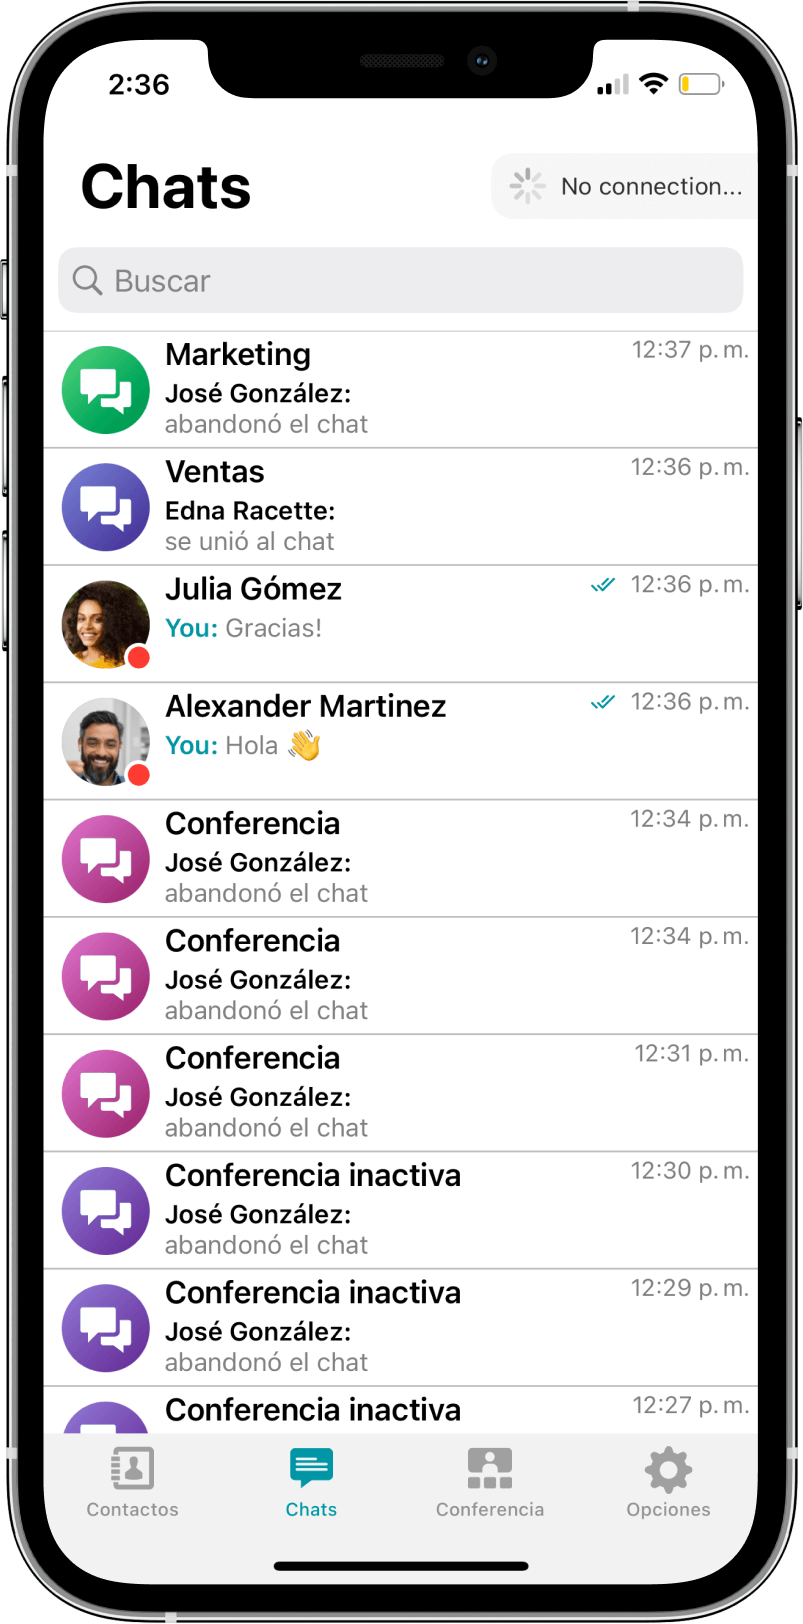 TrueConf 3.3 para iOS: nueva interfaz de usuario, modo de reunión inteligente, acceso sin conexión a chats, contactos e historial de llamadas 7